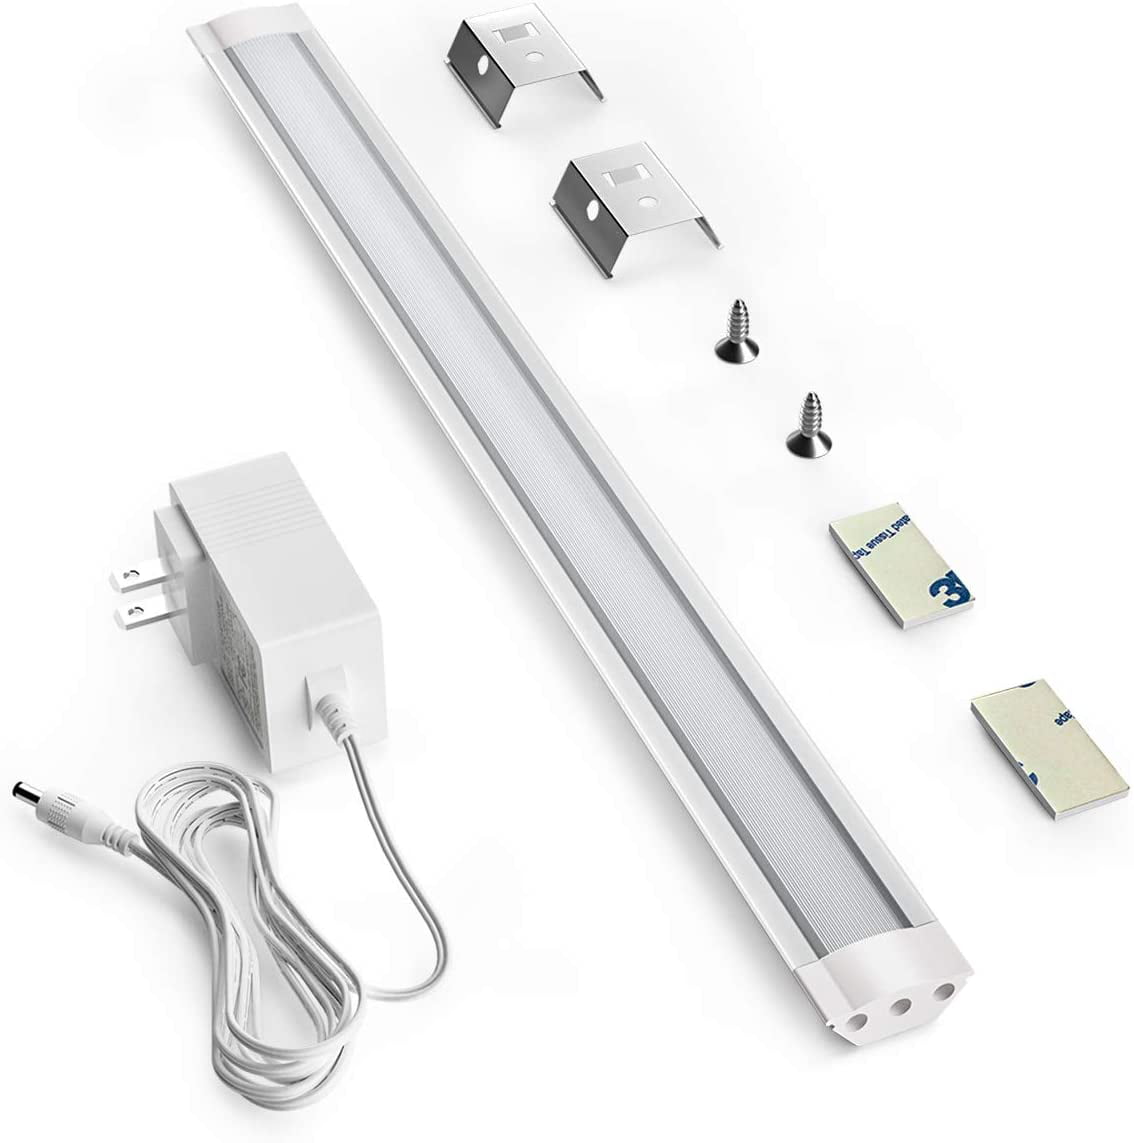 4pcs LED Strip Lights Linkable Under Cabinet Kitchen Cupboard Plug in Bar Kit 